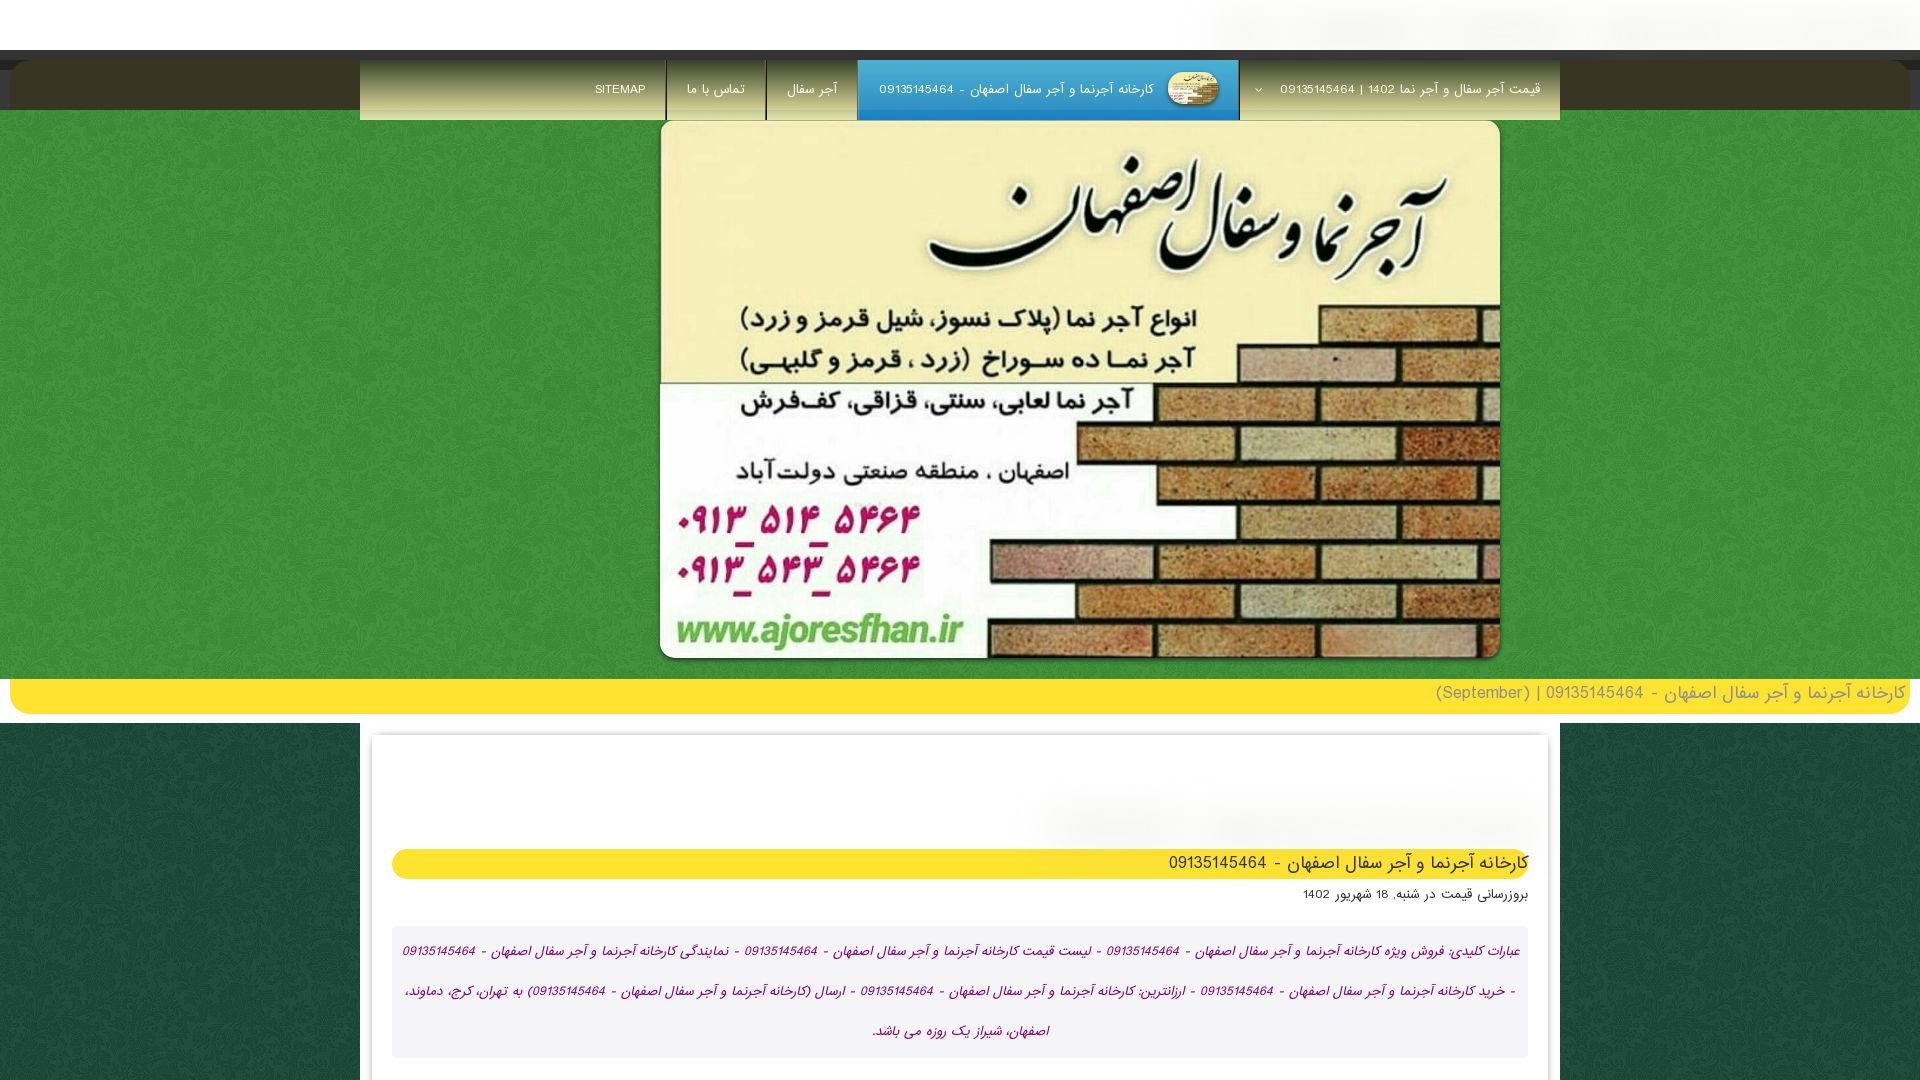 Status do site ajornamaesfahan.ir está   ONLINE